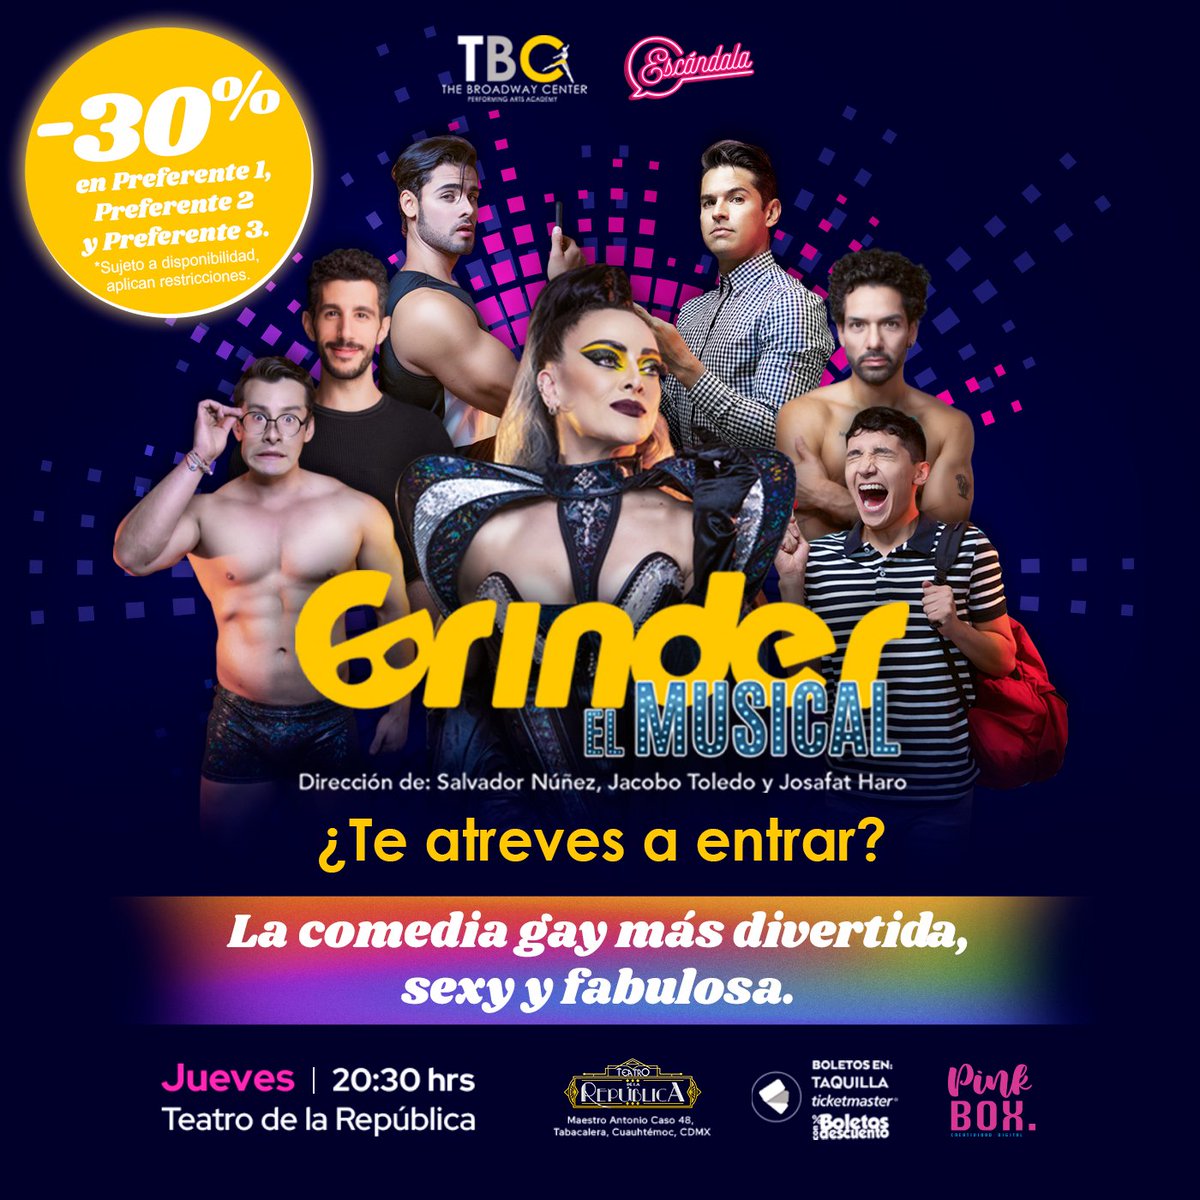 ¡Mis teatreras! Recuerden que su tía Escándala les trae una promo para que no se pierdan @GrinderMexico, la comedia musical gay más divertida de la cartelera. Entren al enlace y obtengan un 30% de descuento Preferente 1, 2 3 👉 bit.ly/3SD1qPH #teatro #gay #cdmx